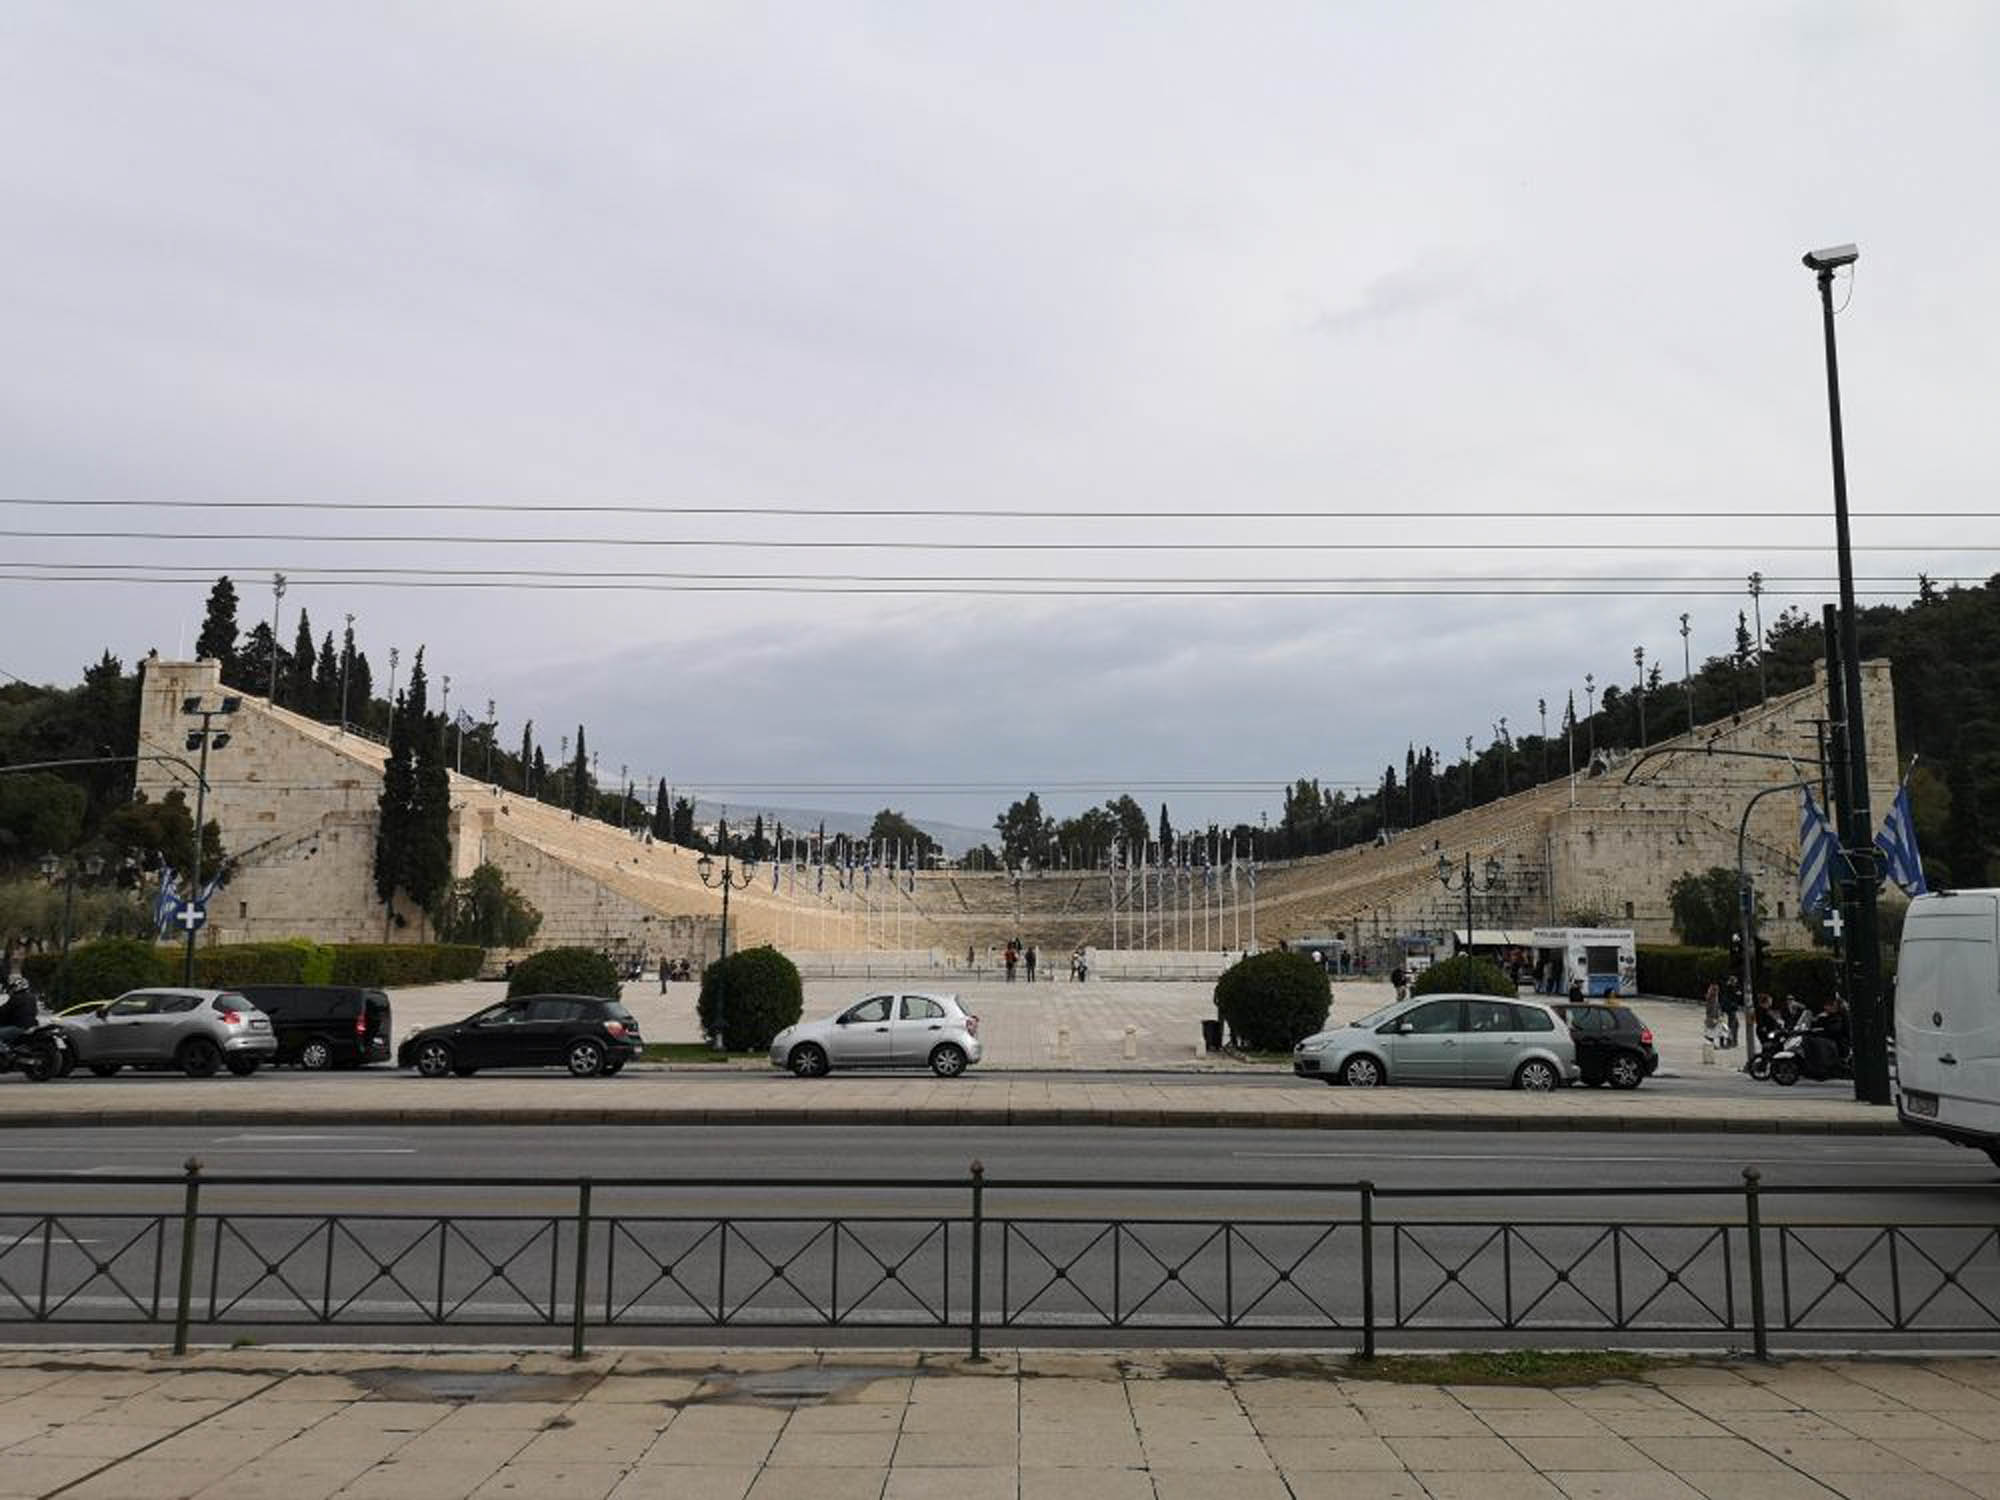 stadion w atenach, spacer po ulicach aten, widok na antyczny stadion